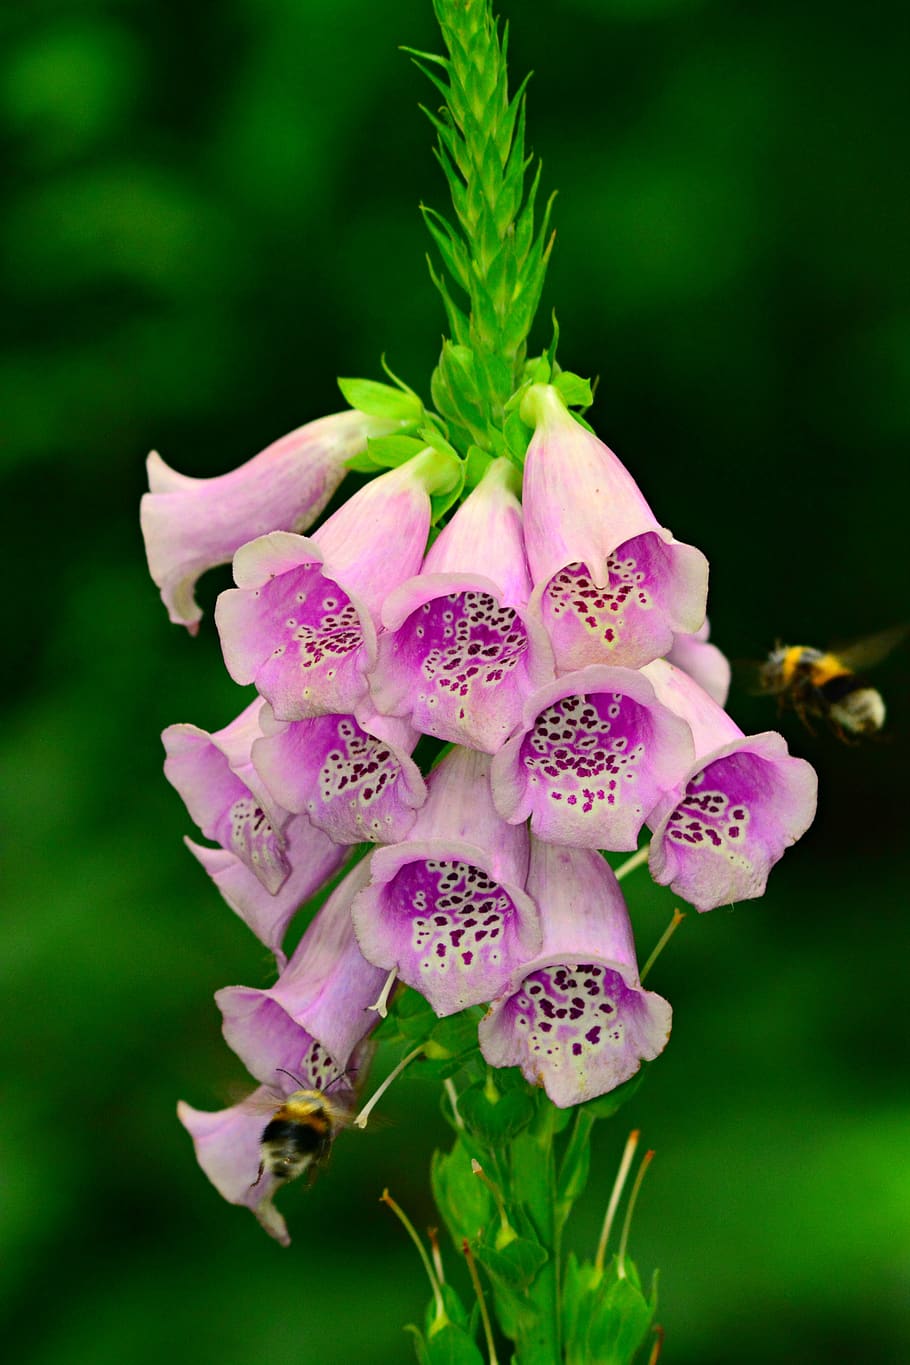 foxglove, flower, plant, thimble, petal, poisonous, pink, purple, flowering plant, freshness